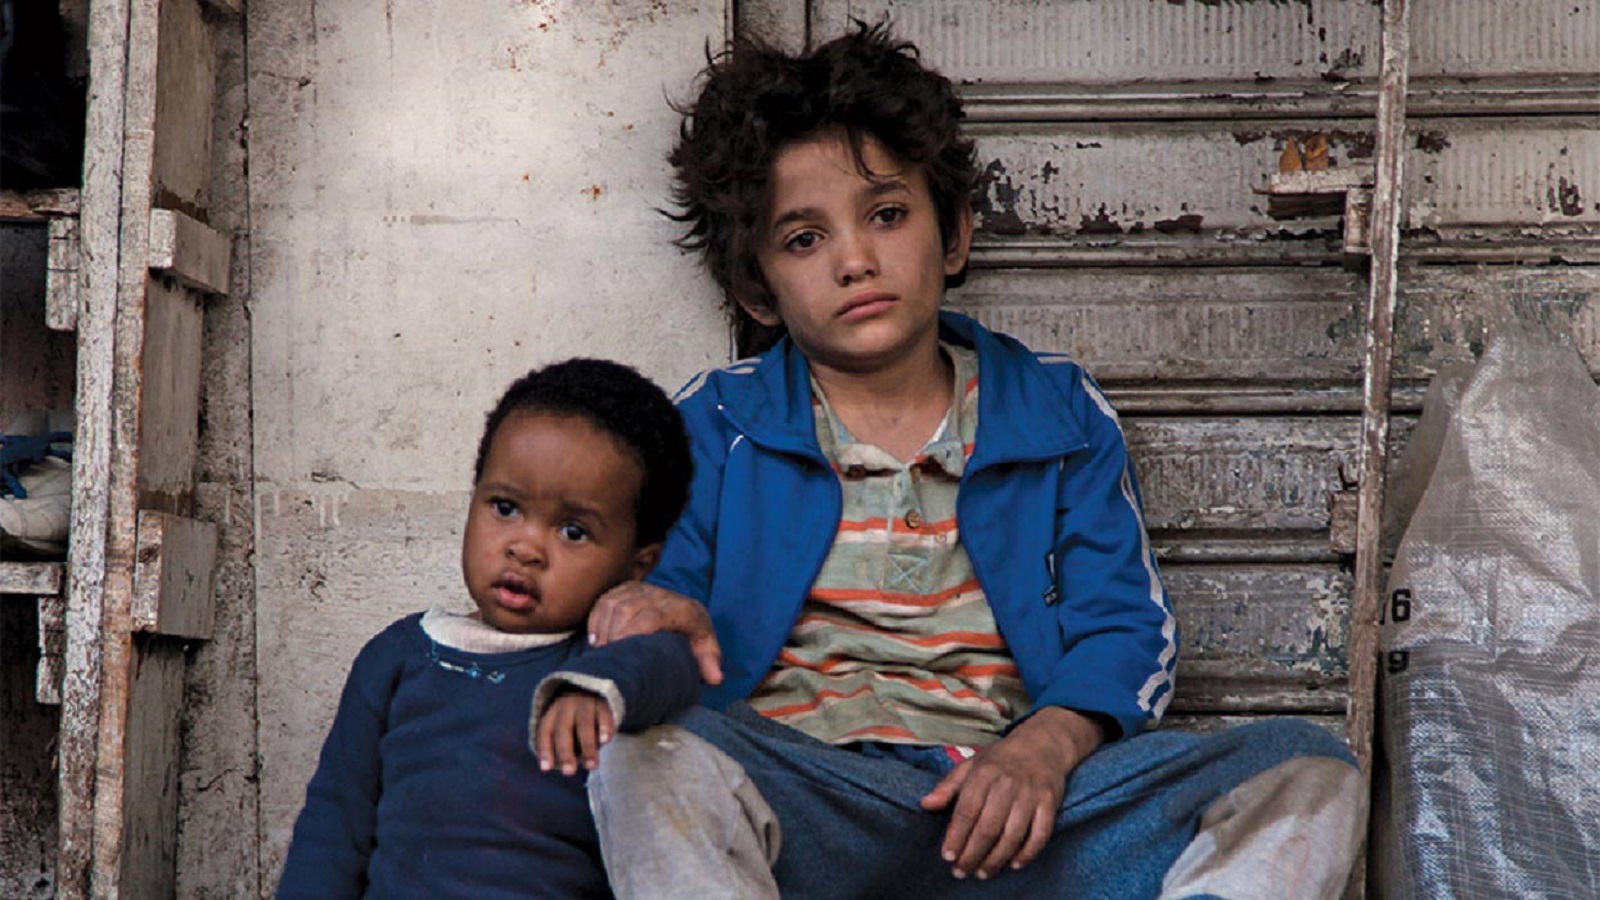 الطفل زين الرفيع والطفل الإثيوبي في مشهد من "كفرناحوم"